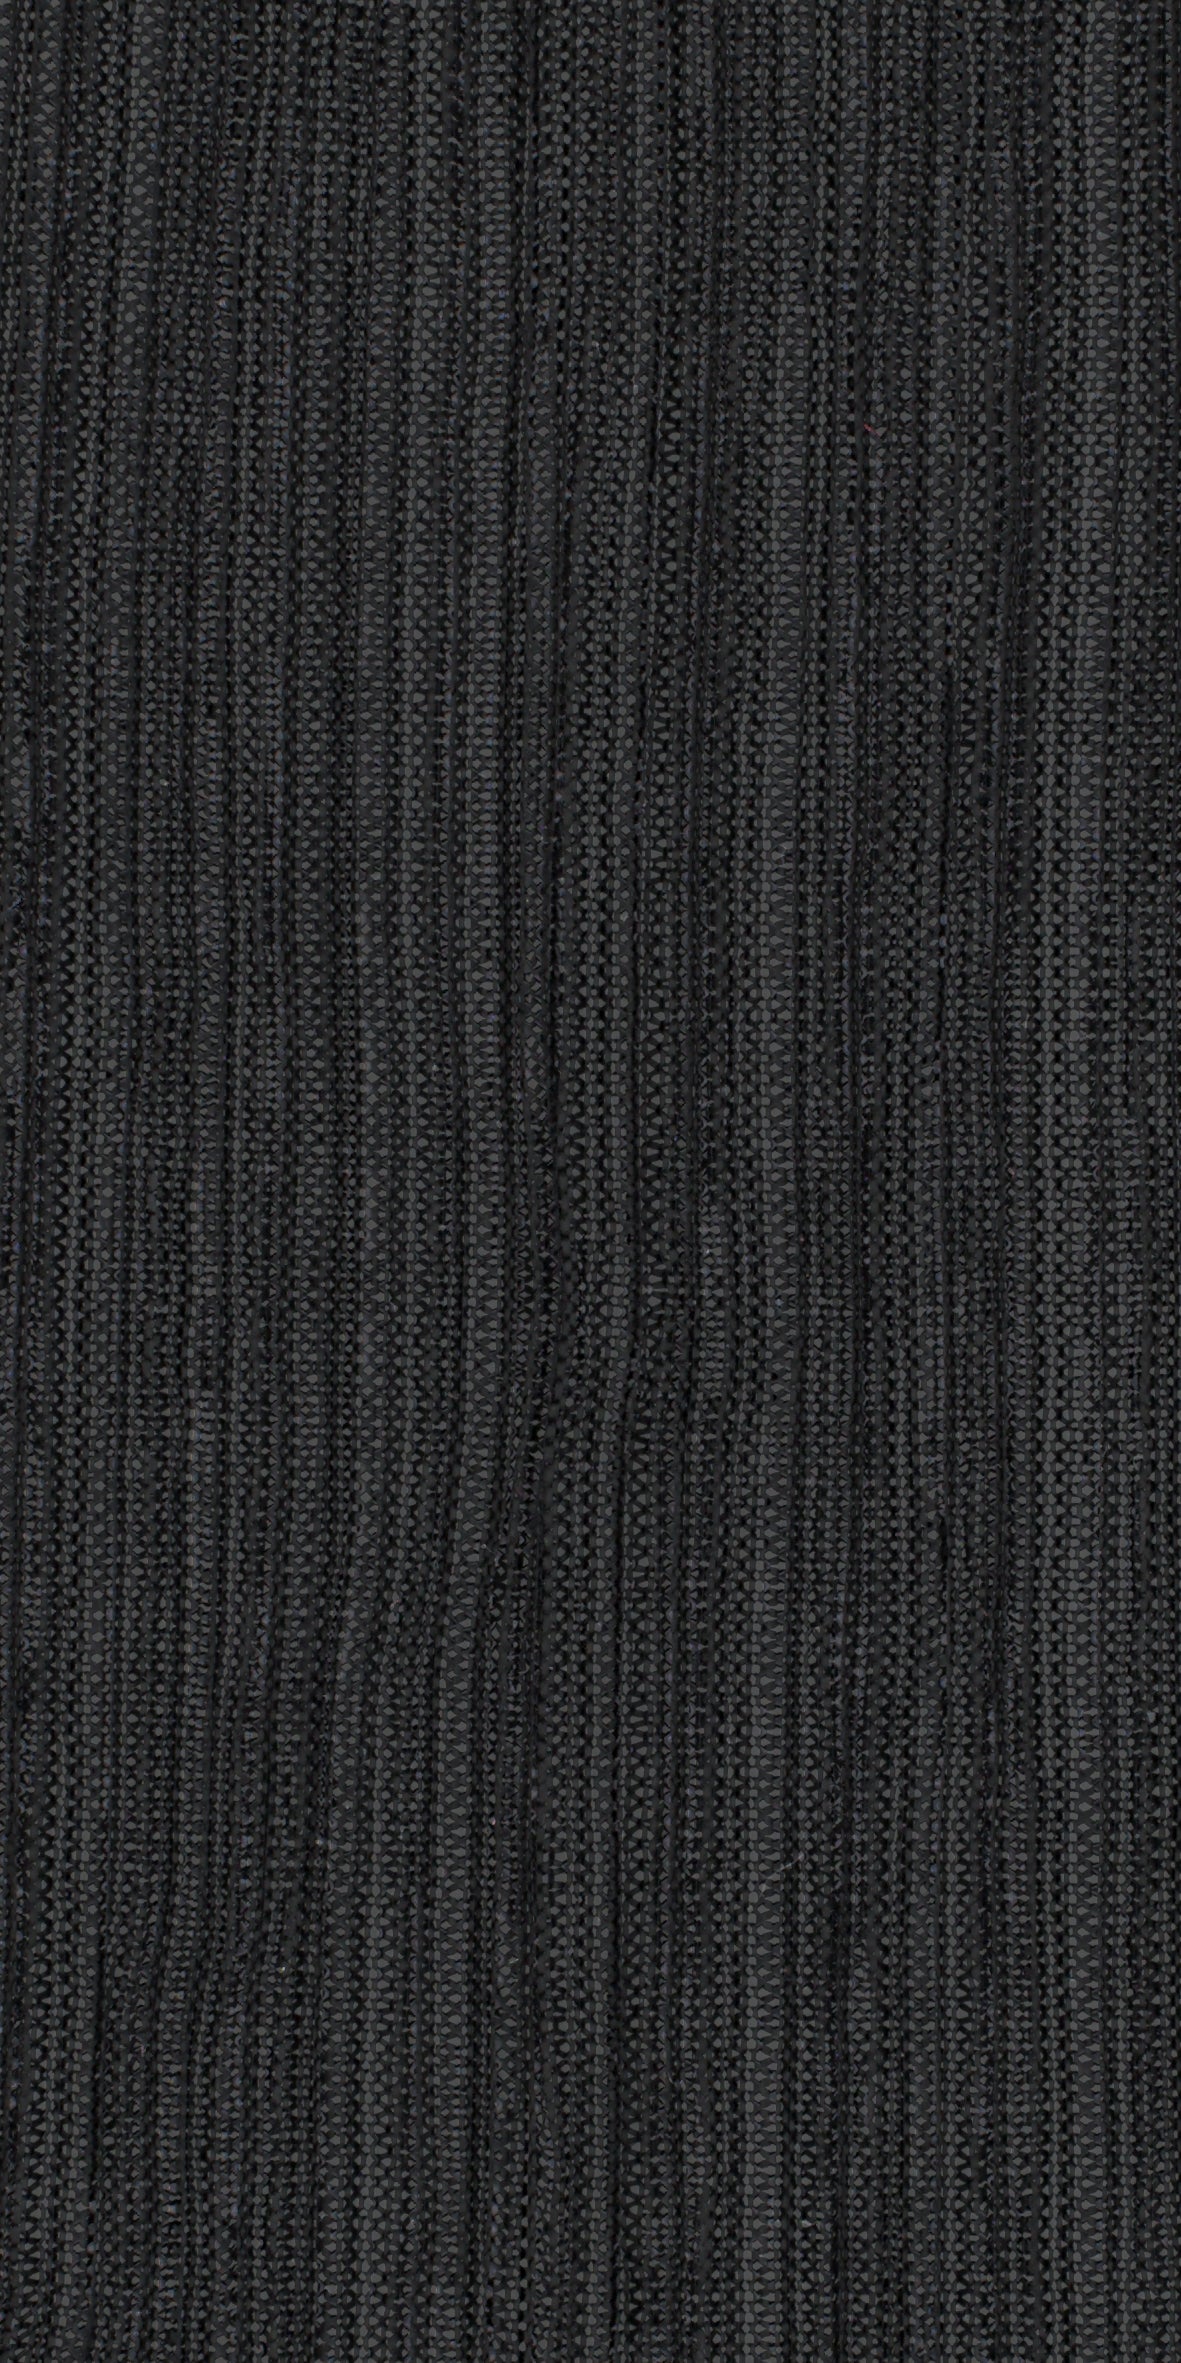 12006-18 Black Metallic Pleat Plain Dyed Blend 126g/yd 56" black blend knit metallic plain dyed pleat ppl new Metallic, Pleat - knit fabric - woven fabric - fabric company - fabric wholesale - fabric b2b - fabric factory - high quality fabric - hong kong fabric - fabric hk - acetate fabric - cotton fabric - linen fabric - metallic fabric - nylon fabric - polyester fabric - spandex fabric - chun wing hing - cwh hk - fabric worldwide ship - 針織布 - 梳織布 - 布料公司- 布料批發 - 香港布料 - 秦榮興